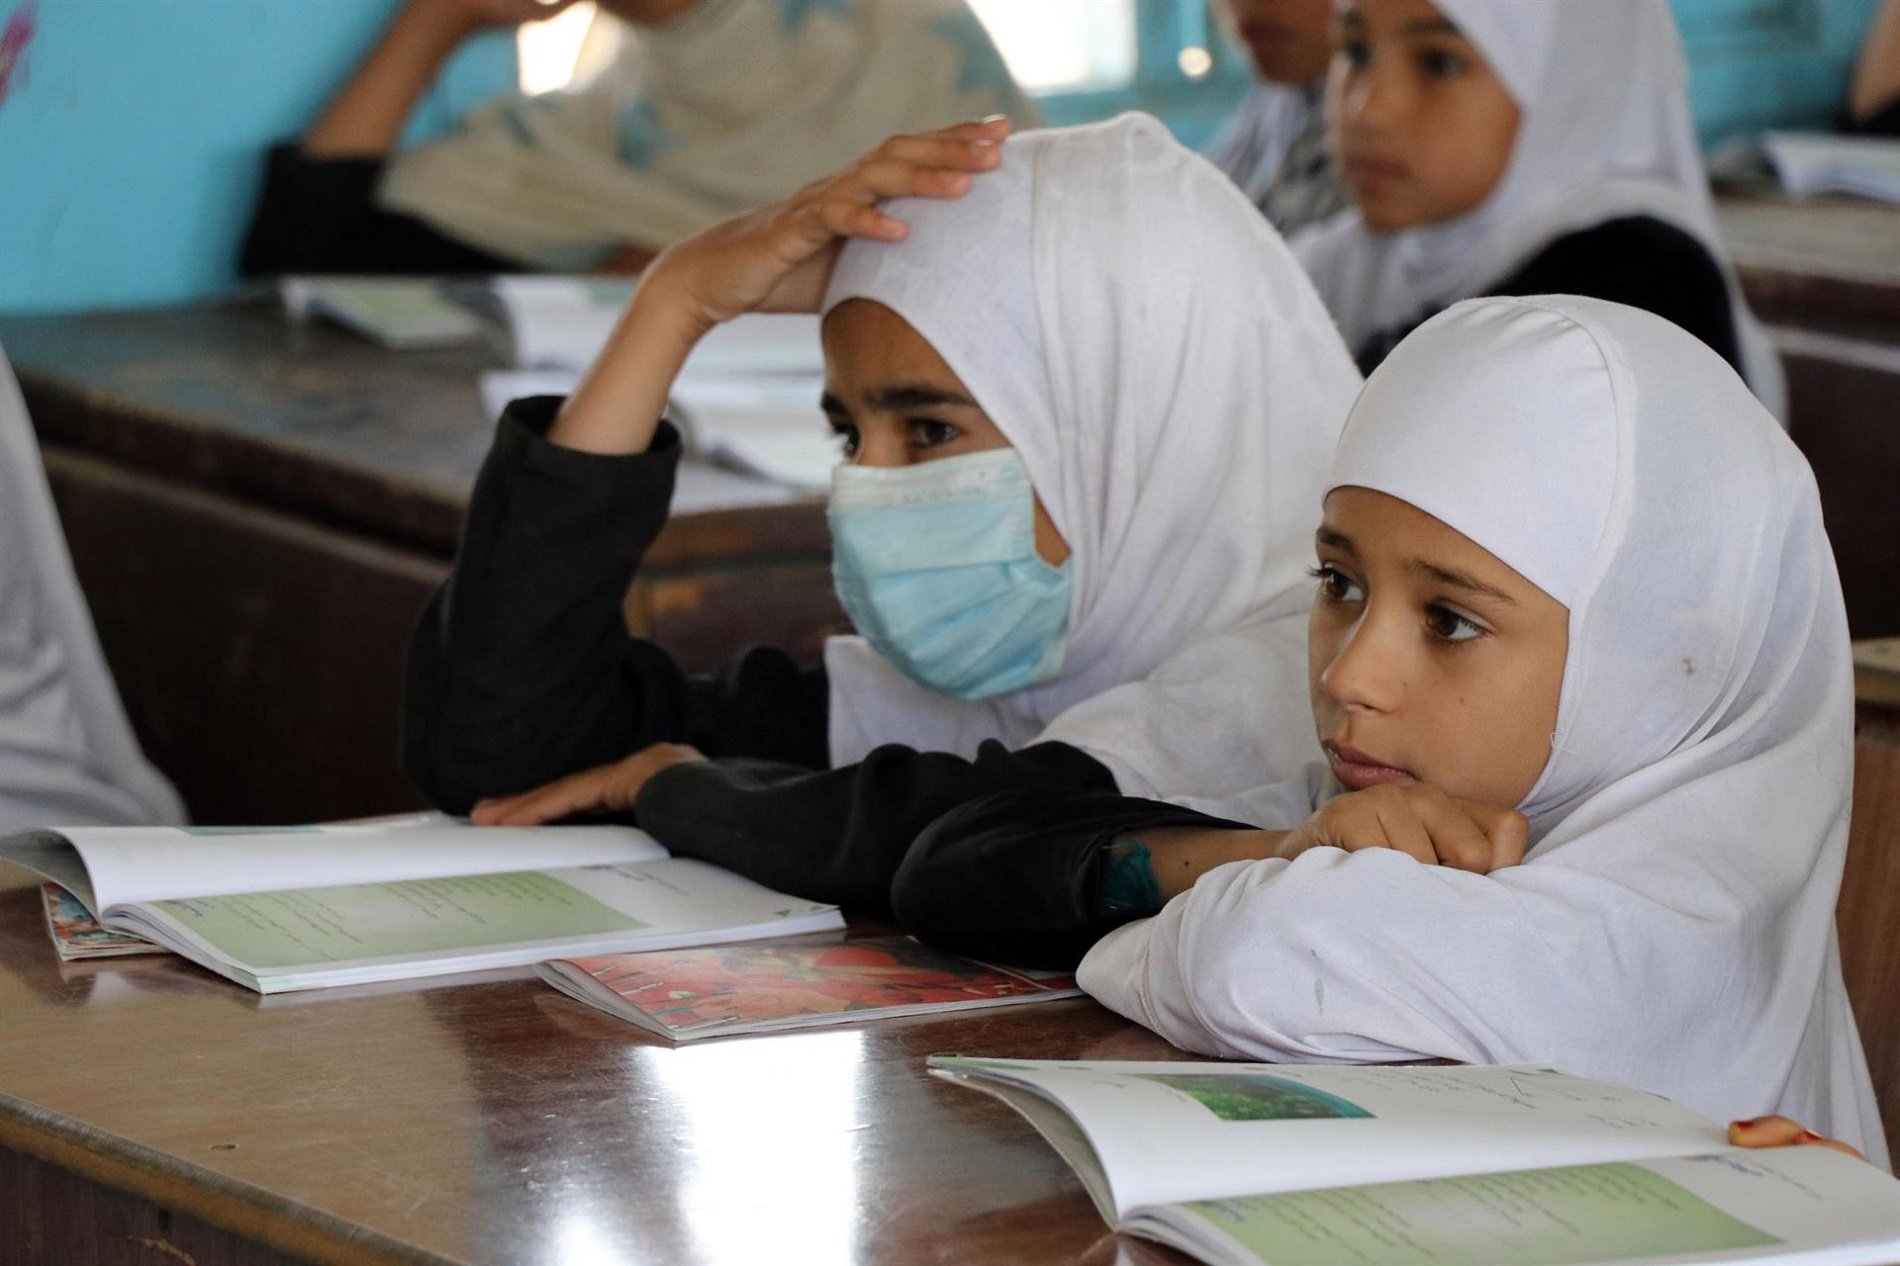 Les estudiants afganeses: un any sense escola